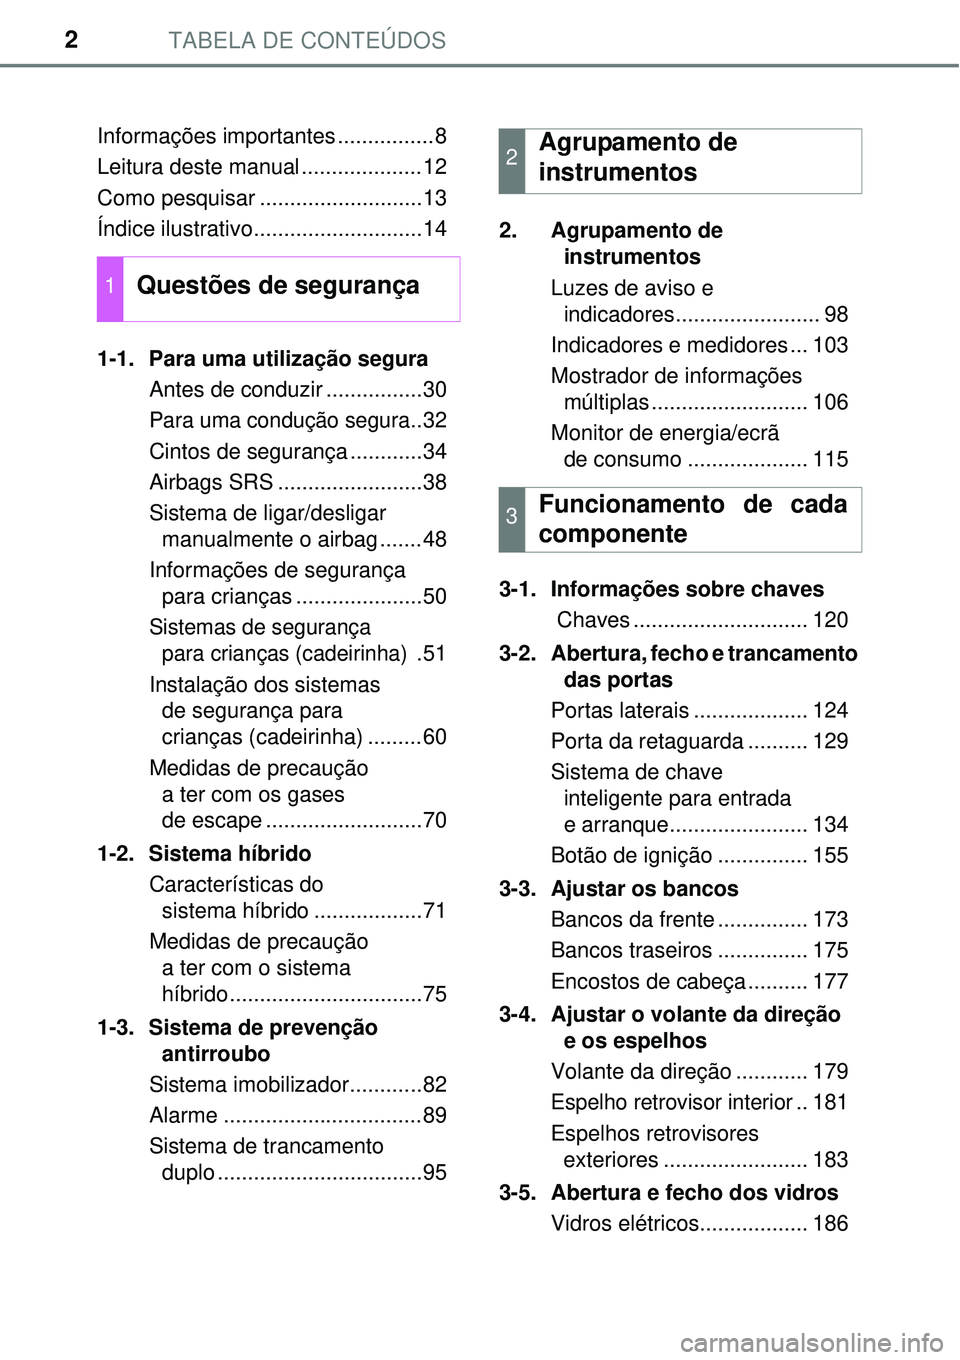 TOYOTA AURIS HYBRID 2016  Manual de utilização (in Portuguese) TABELA DE CONTEÚDOS2
Informações importantes ................8
Leitura deste manual ....................12
Como pesquisar ...........................13
Índice ilustrativo..........................